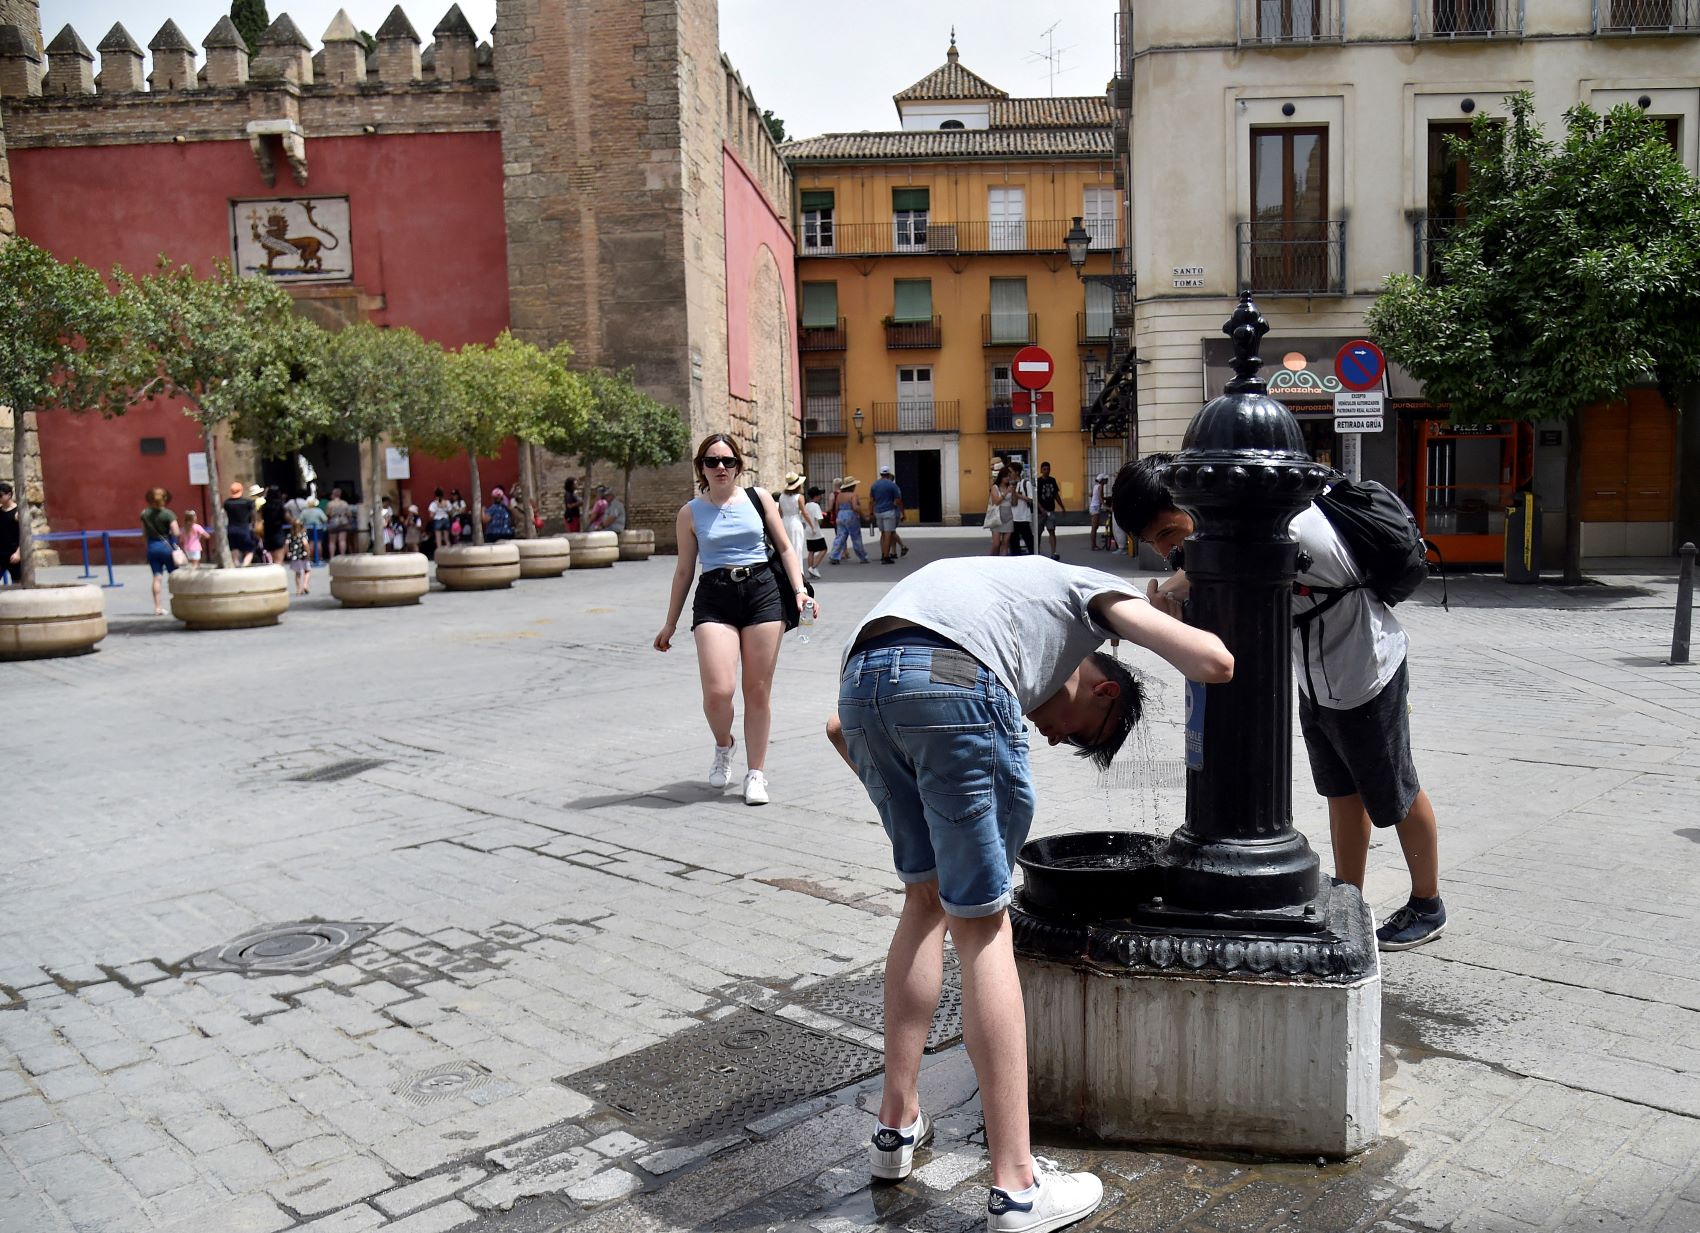 Jovens se refrescam em fonte pública para enfrentar calor de mais de 40 graus em Sevilha: Espanha registrou calor recorde em maio e junho (Foto: Cristina Quicler / AFP)